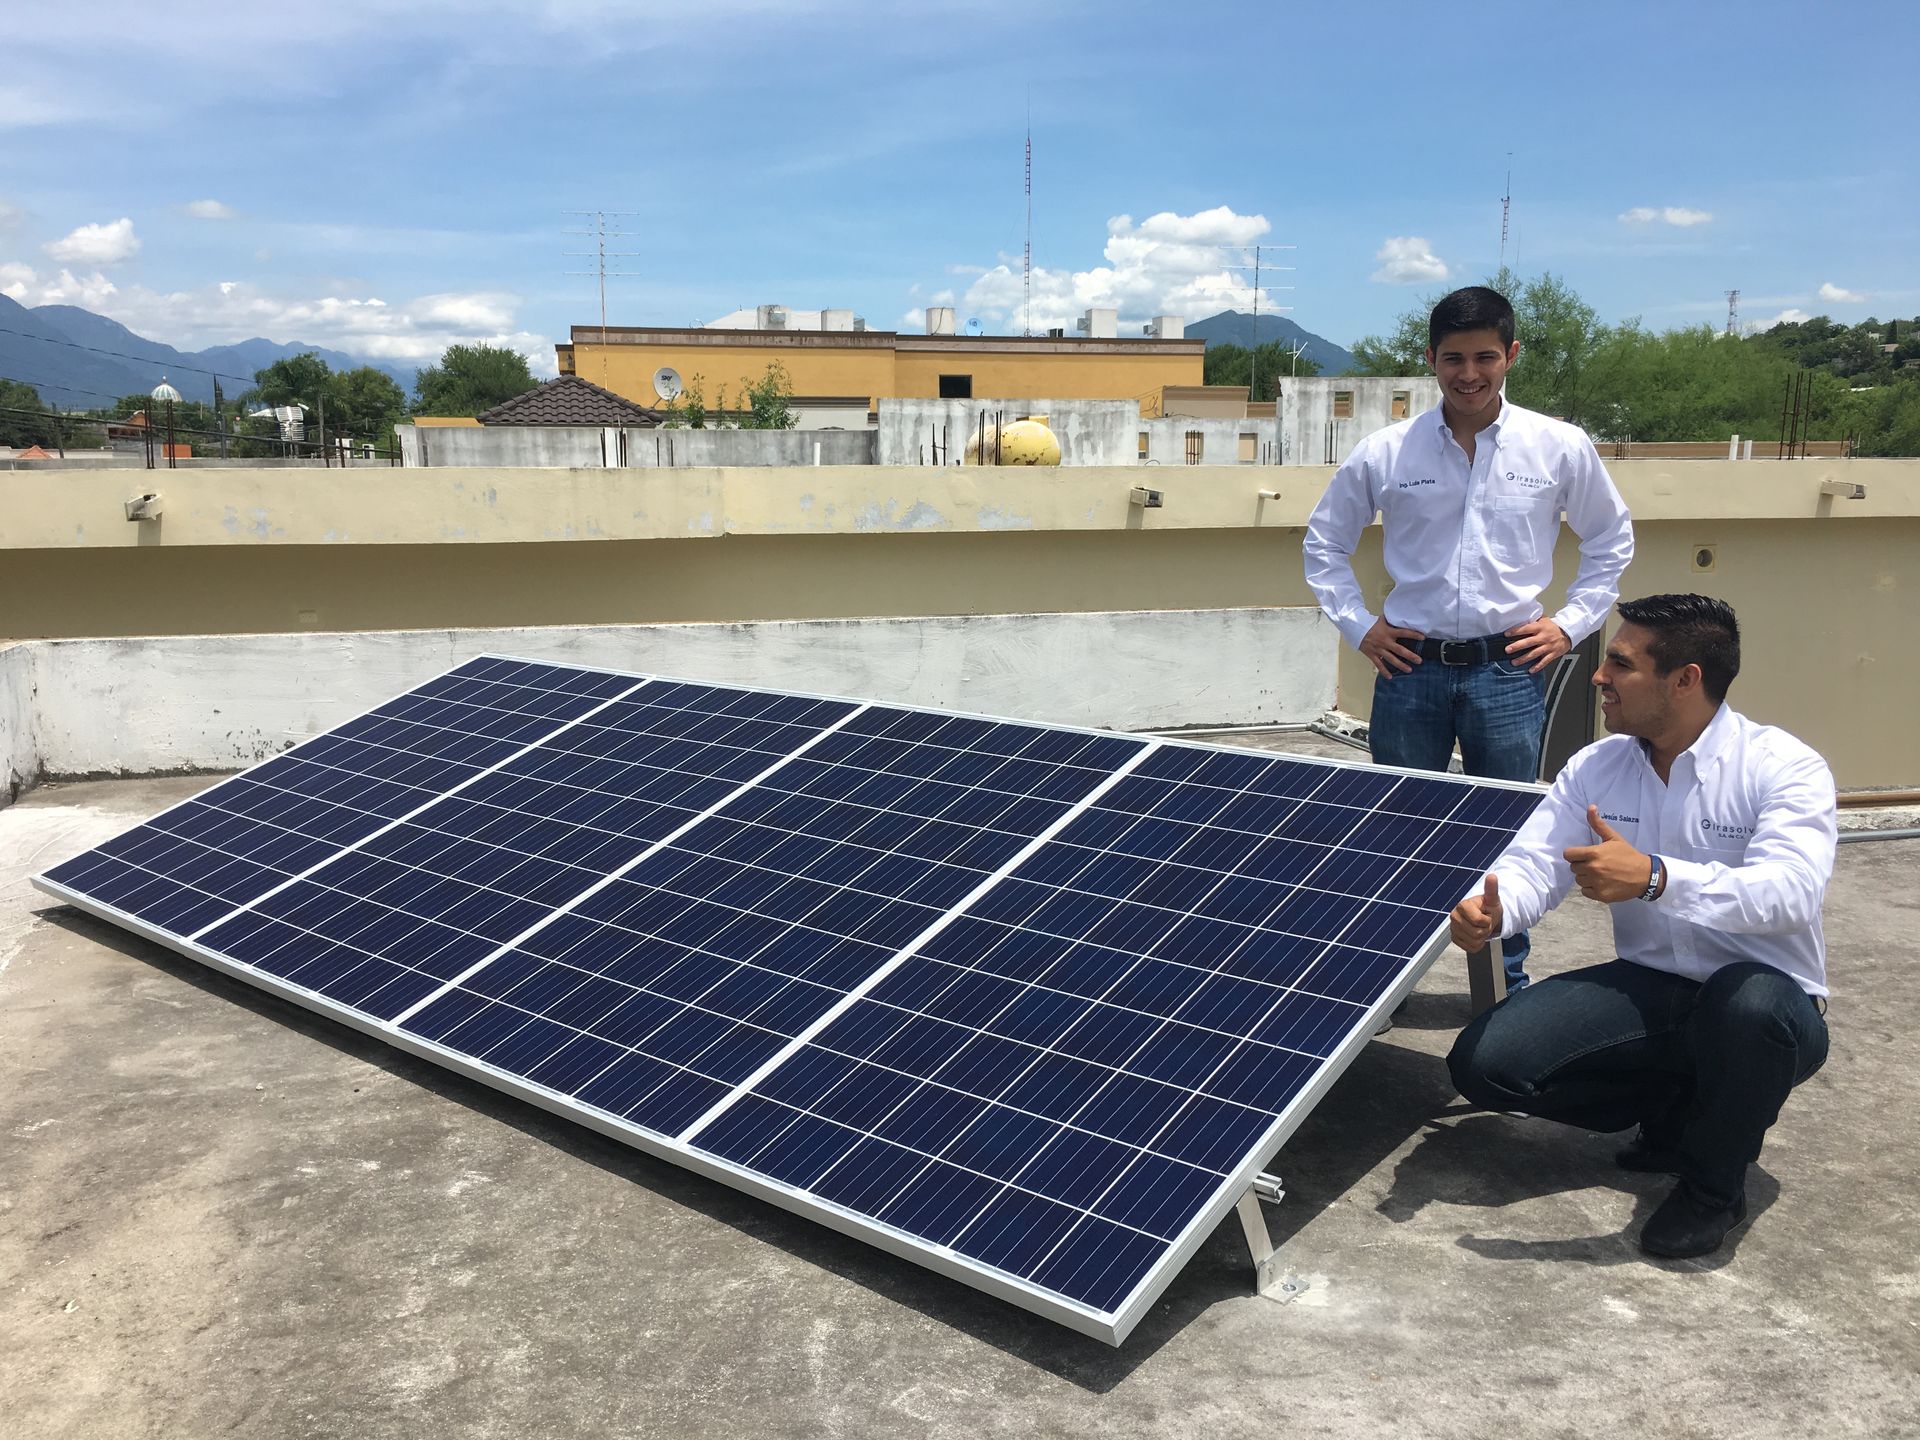 Luis Plata Cavazos fue reconocido a nivel nacional por su trayectoria emprendedora que inició con el sueño de energía limpia para todos